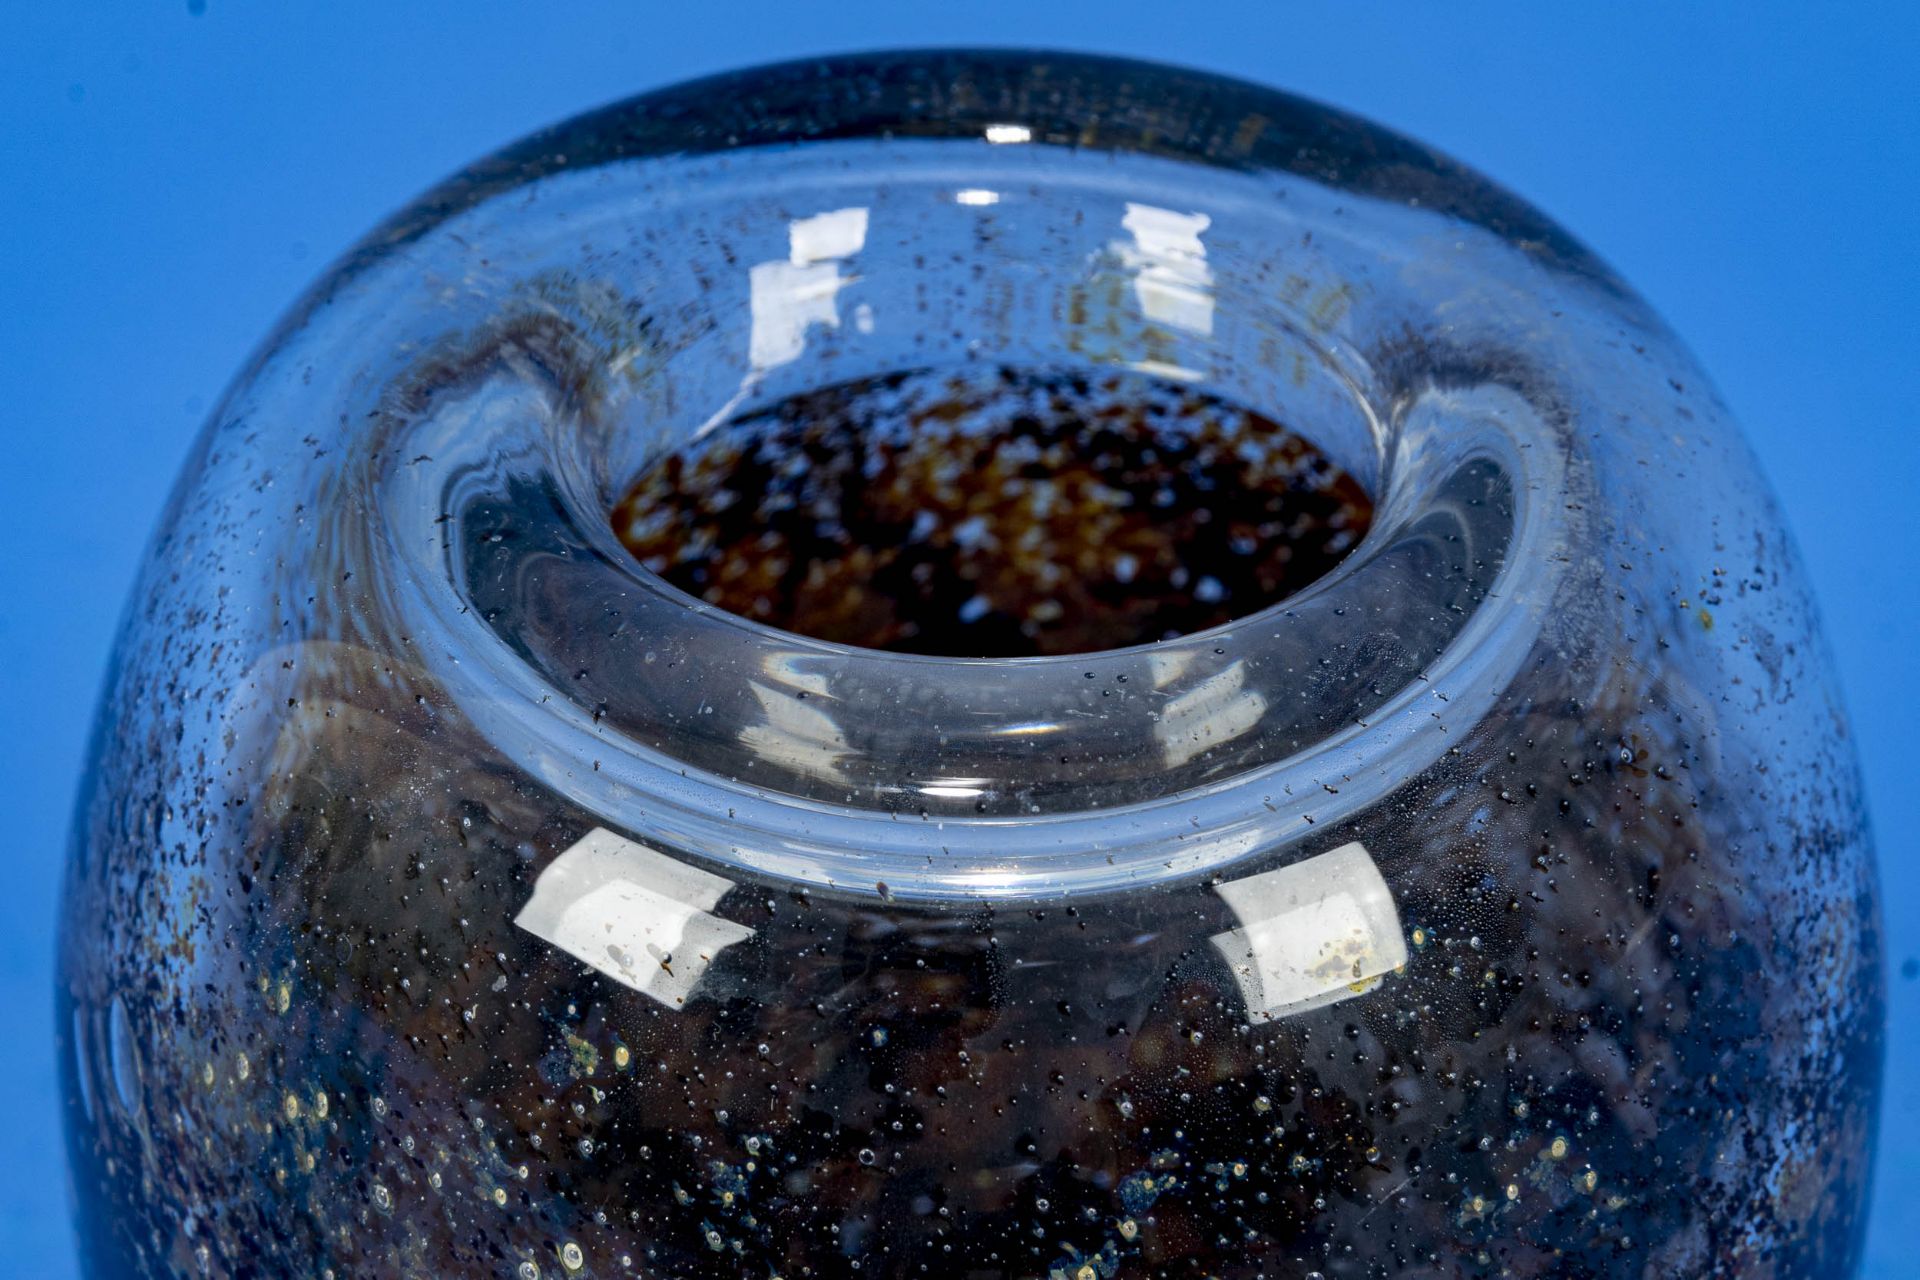 "DEXEL-EI", eiförmige Glasvase, WMF IKORA, braun-graue Einschlüsse, unzählige Luftblasen, dickwandi - Bild 3 aus 6